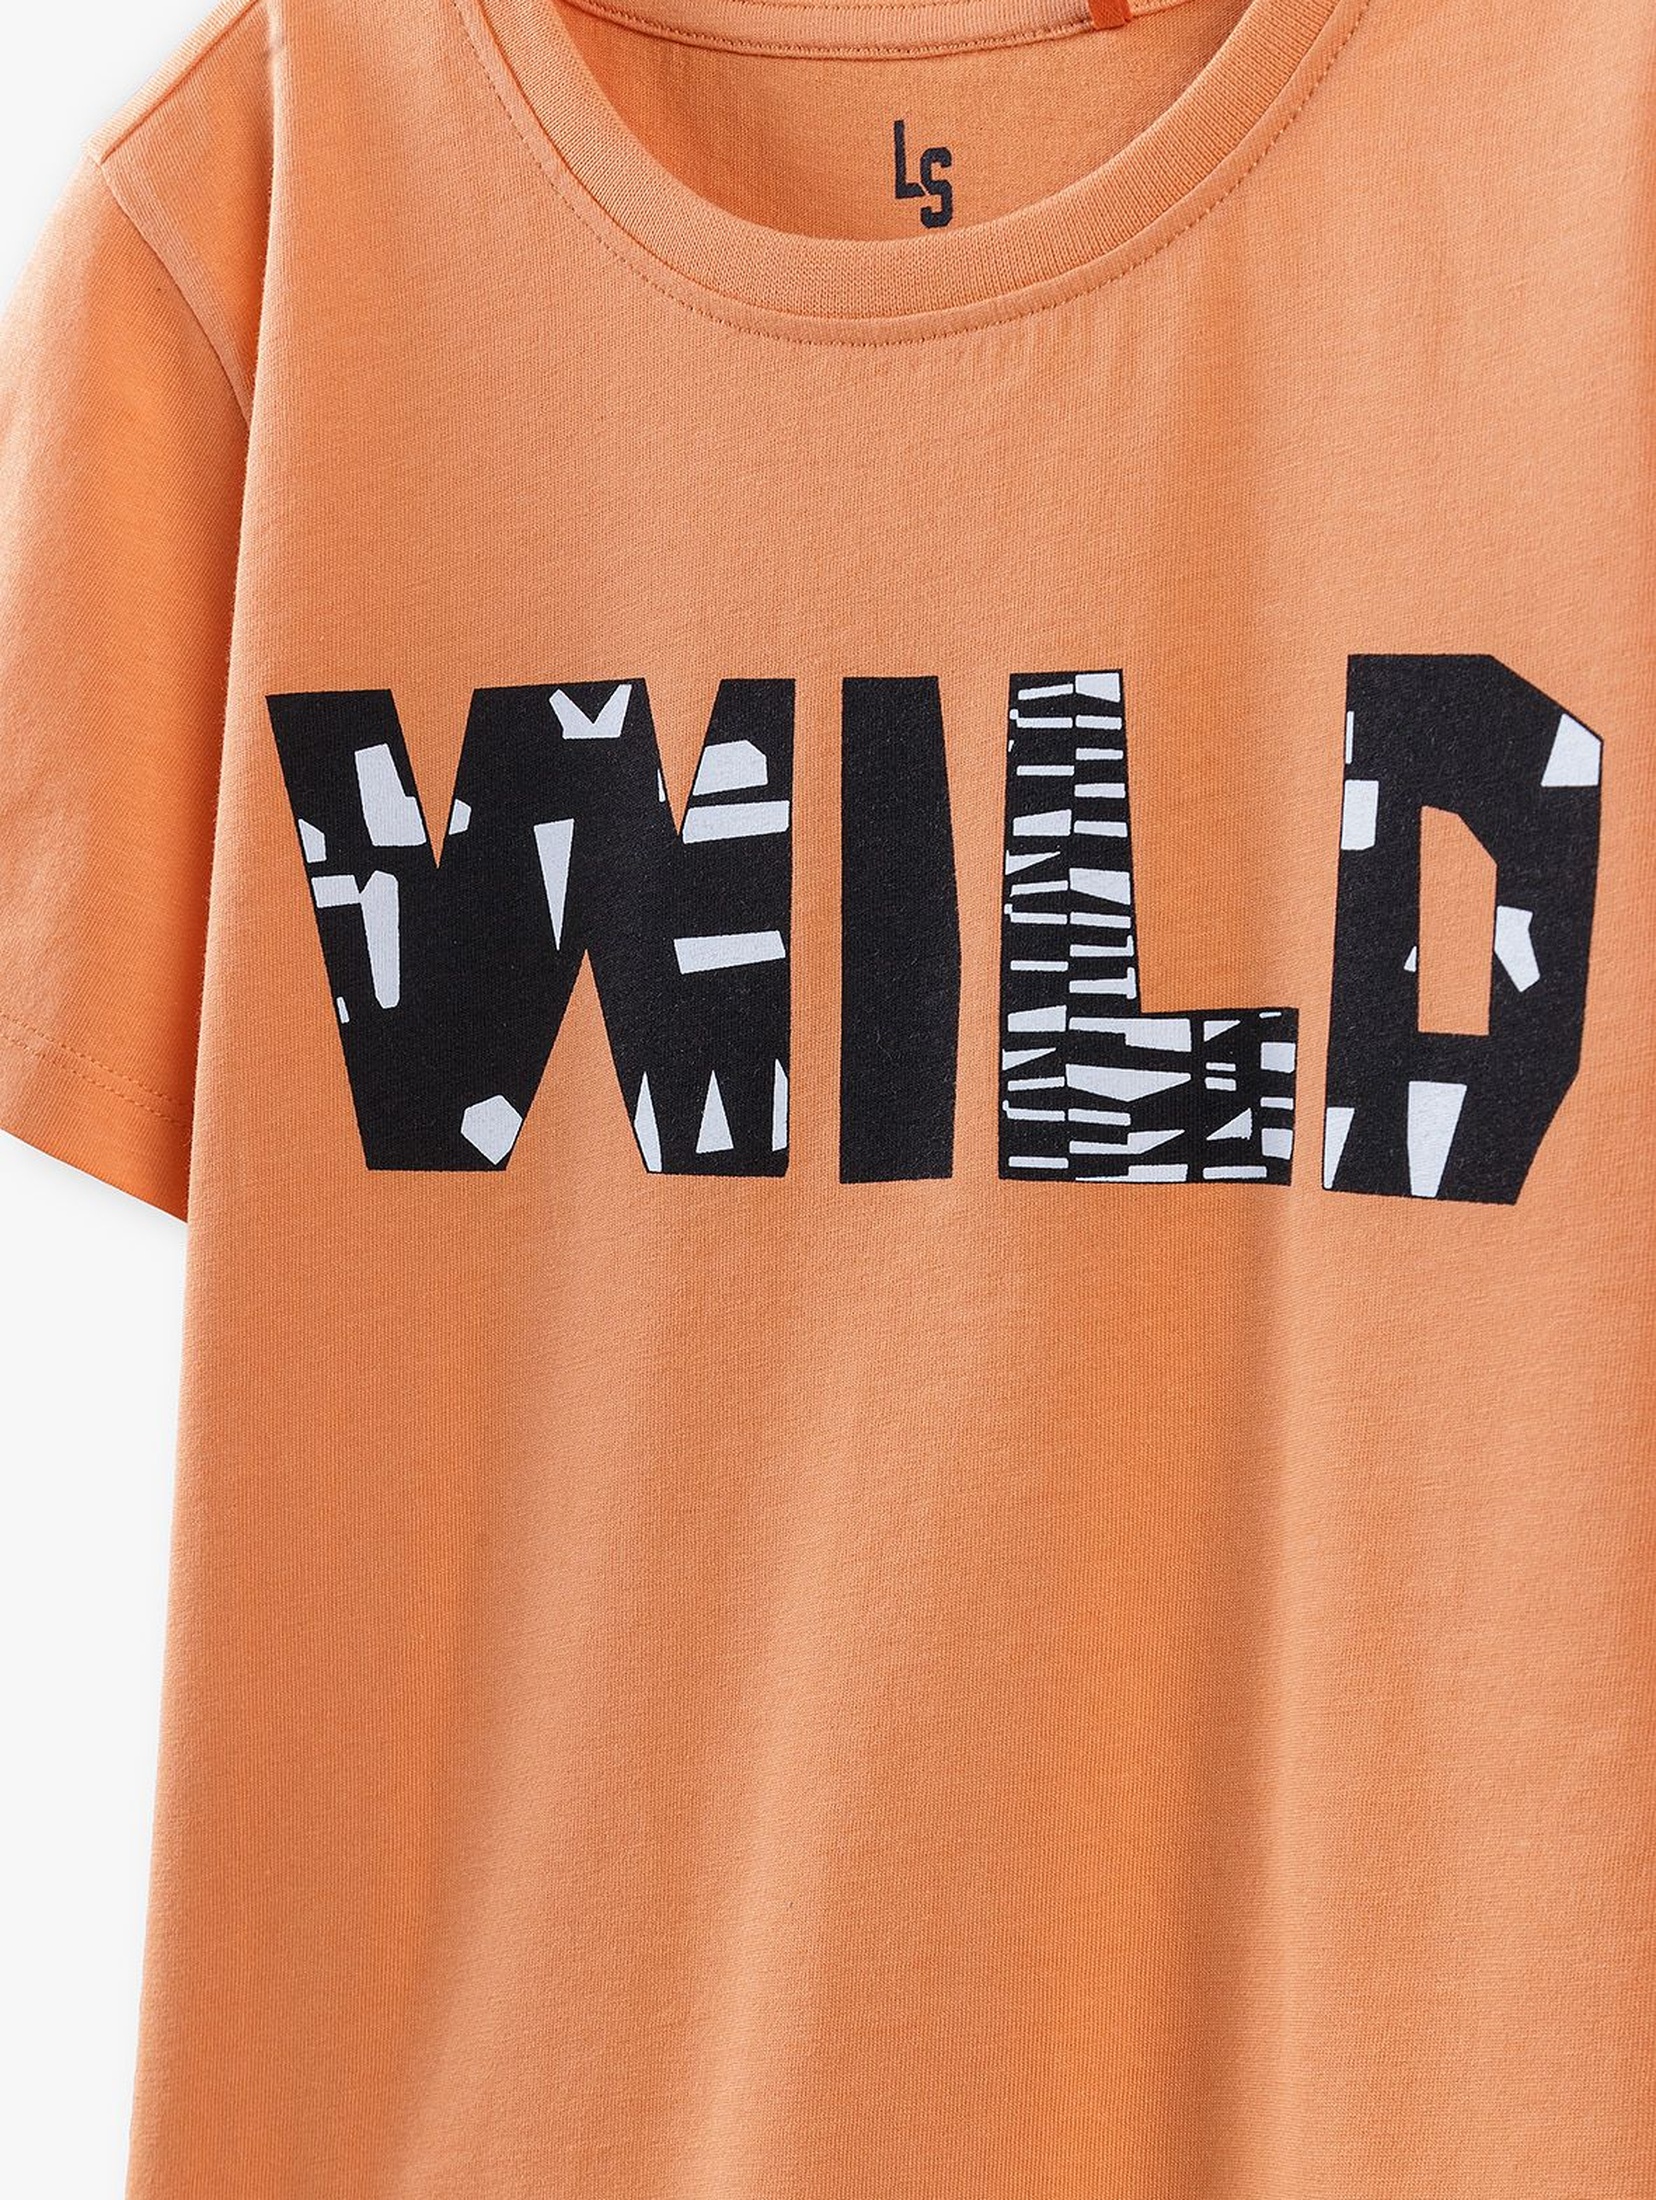 T-shirt dla chłopca- pomarańczowy Wild